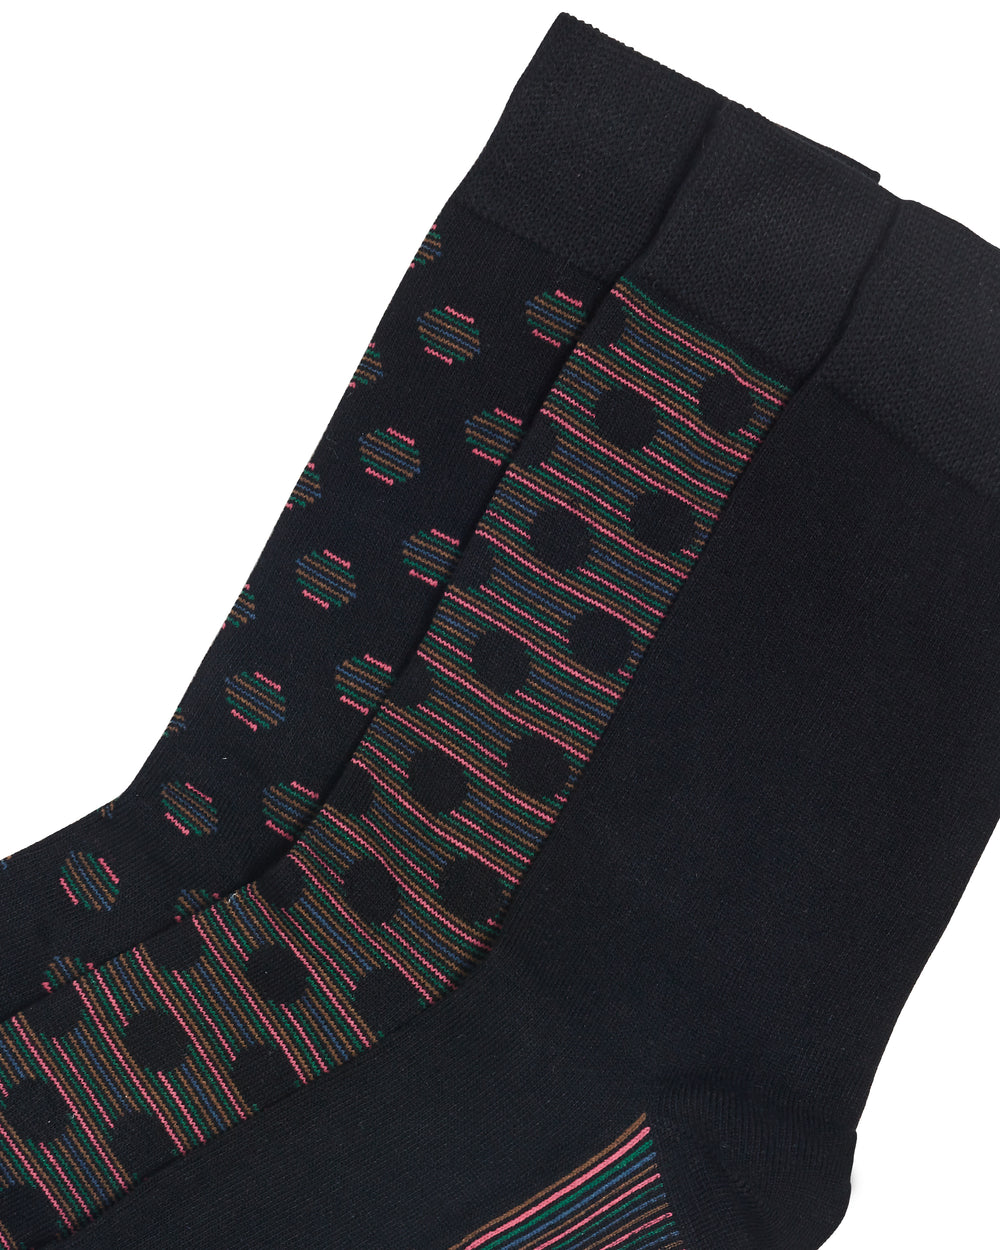 Empery Men's 3-Pack Socks - Black Multi